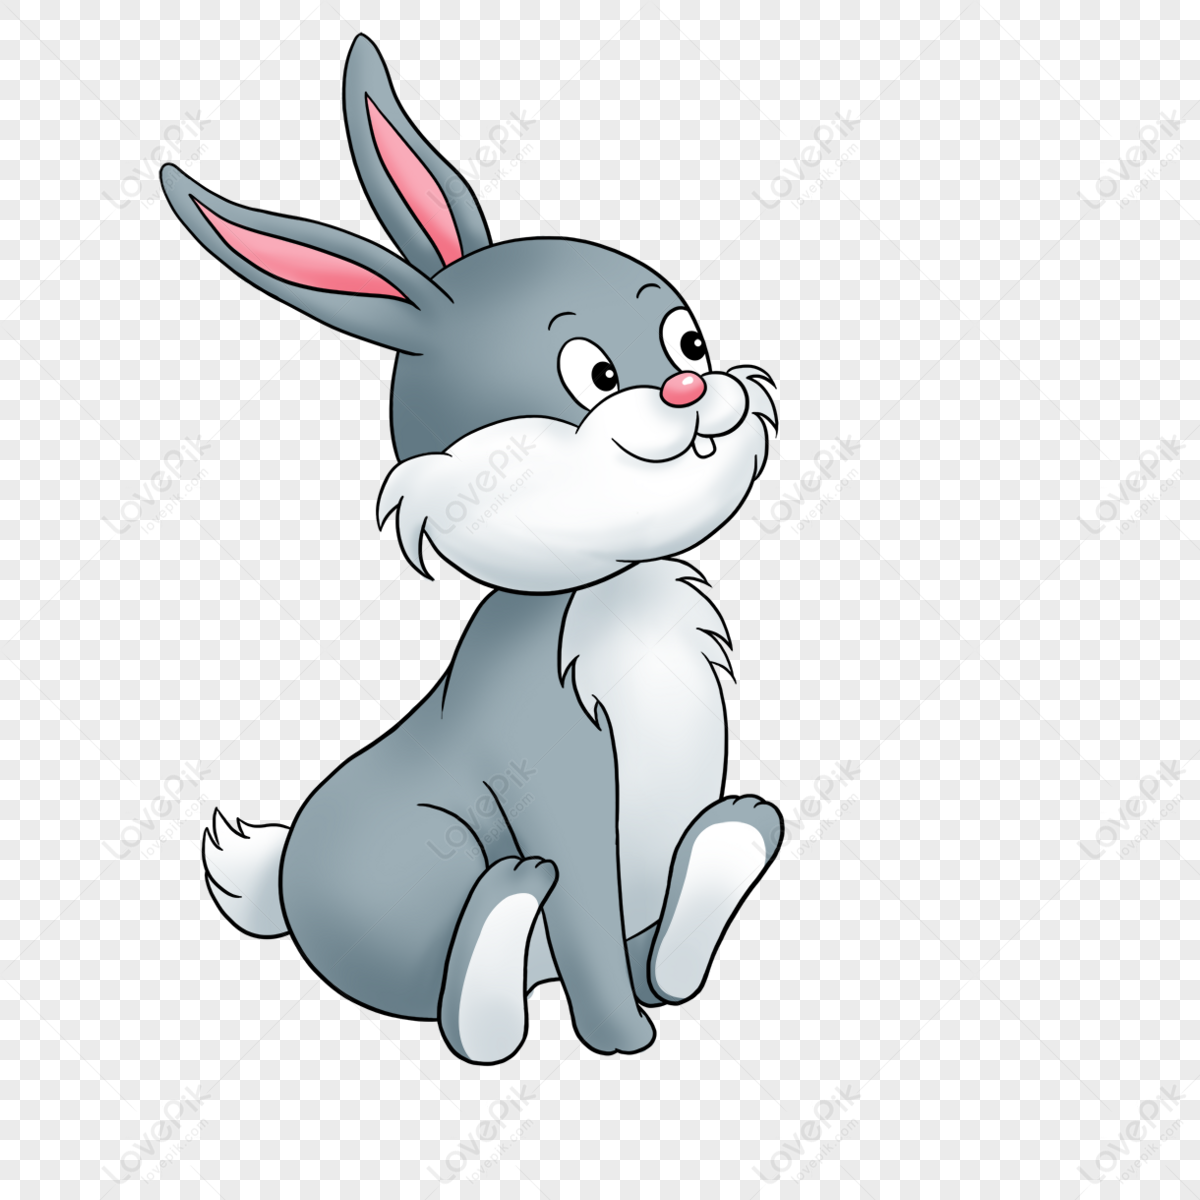 Squatting Clipart Bunny,animal,grey Rabbit,squatting Rabbit PNG ...